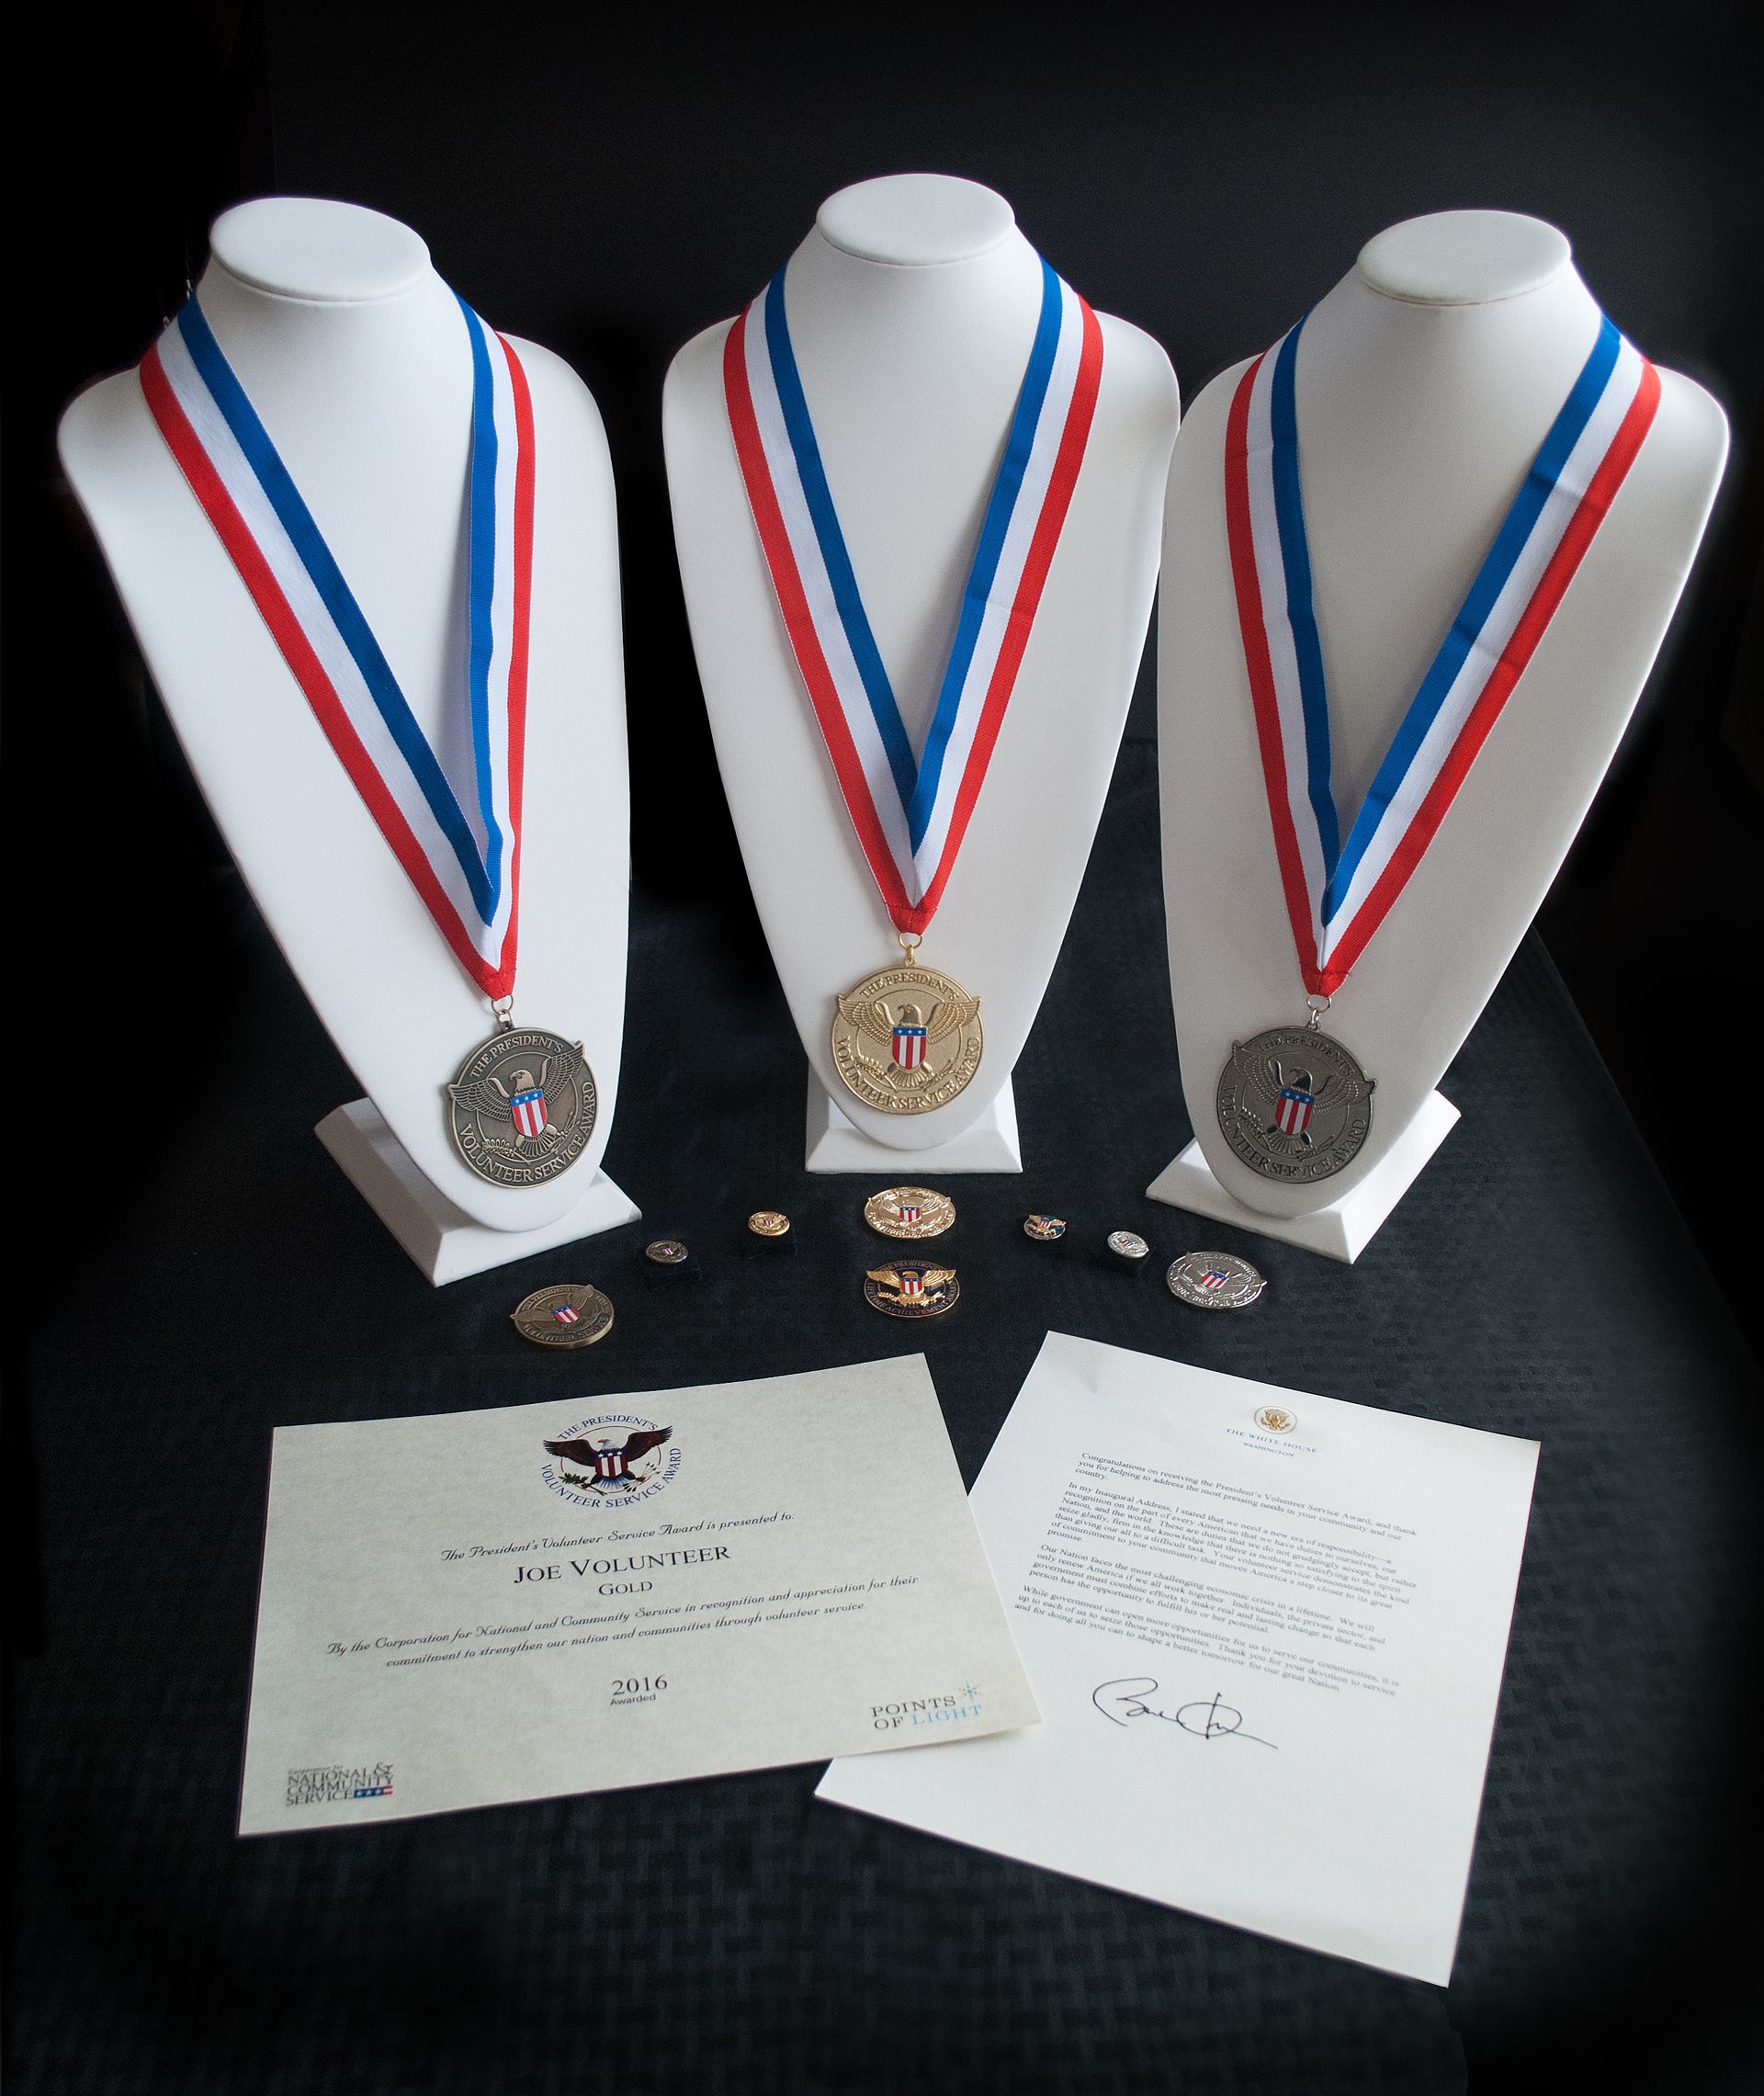 Источник изображения: Сайт PVSA (https://presidentialserviceawards.gov/) Награды за службу делятся на золотые, серебряные и бронзовые медали в зависимости от количества волонтерских часов, а волонтерские часы различаются в зависимости от возраста.